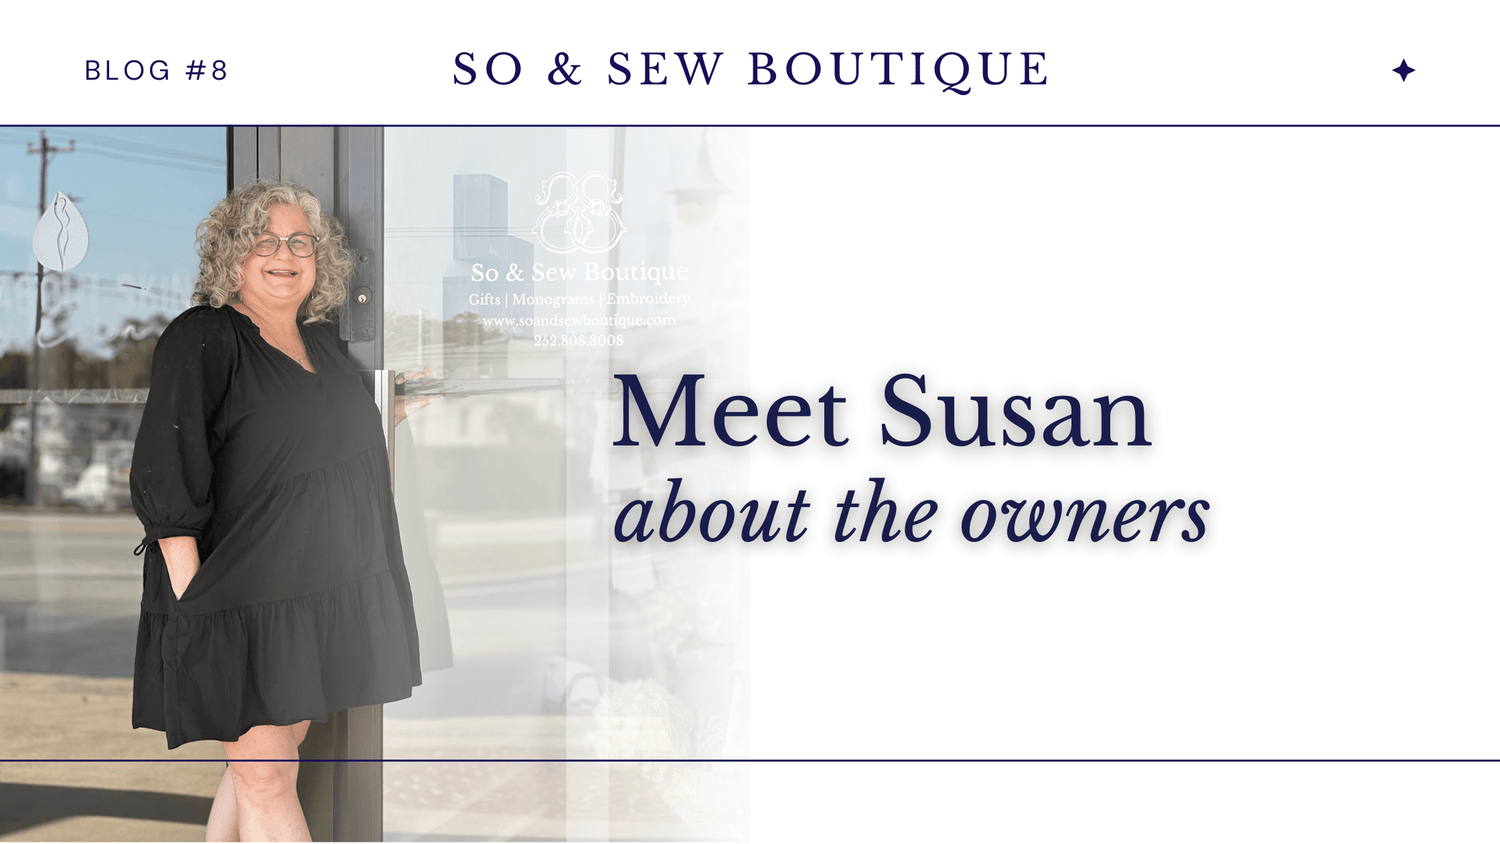 Meet Susan - So & Sew Boutique